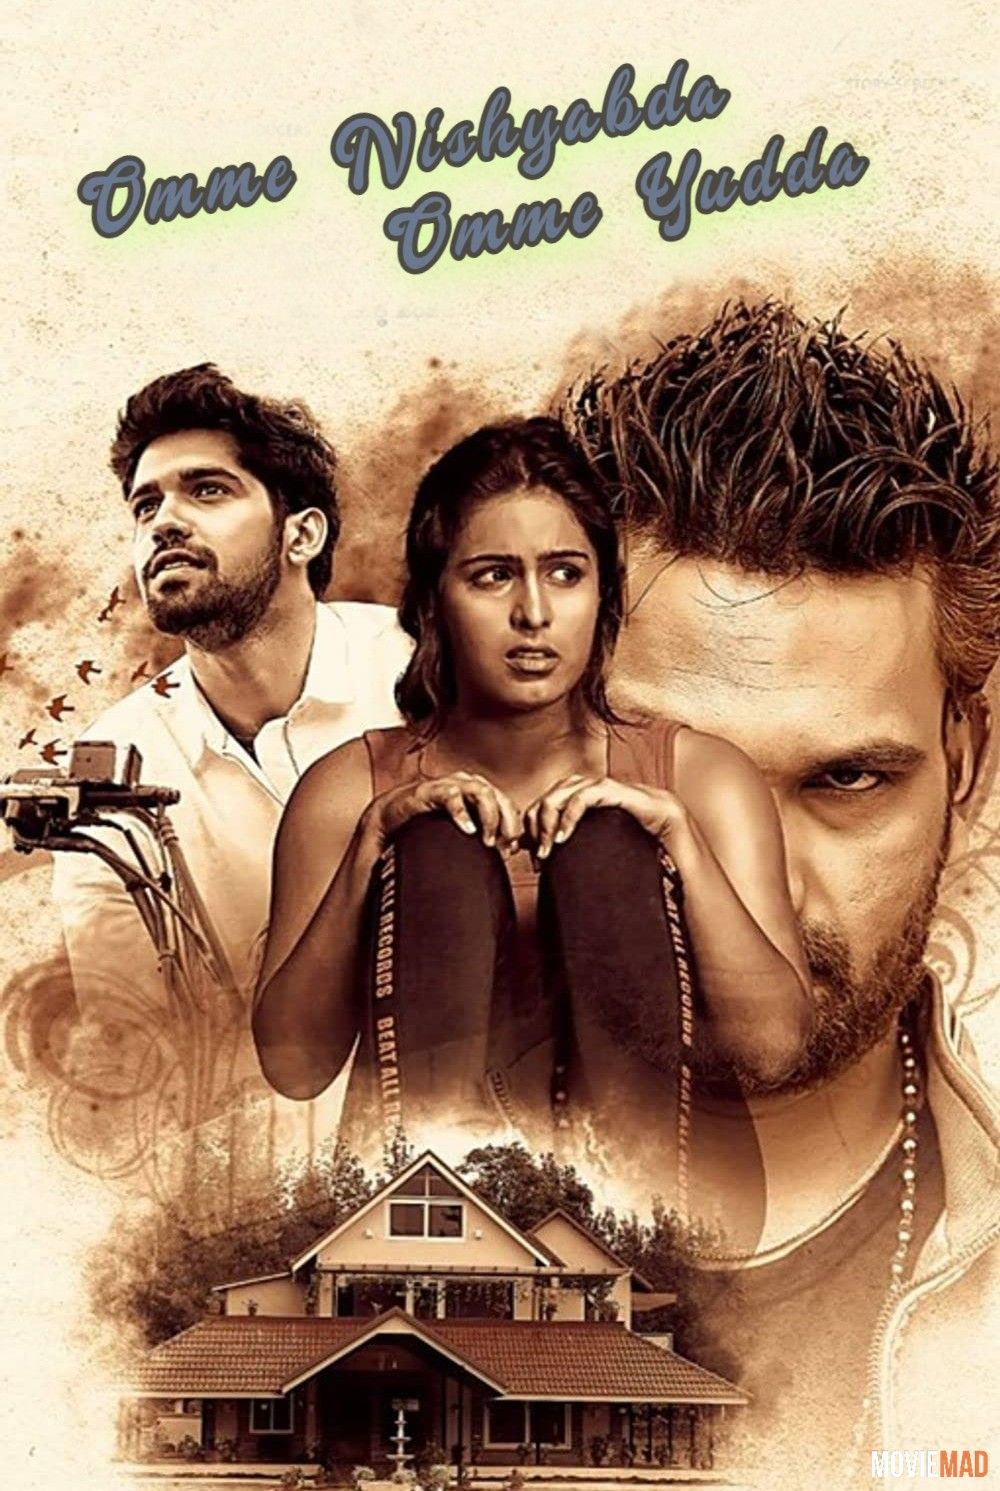 full moviesOmme Nishyabda Omme Yudda (2021) Hindi Dubbed HDTV Full Movie 720p 480p